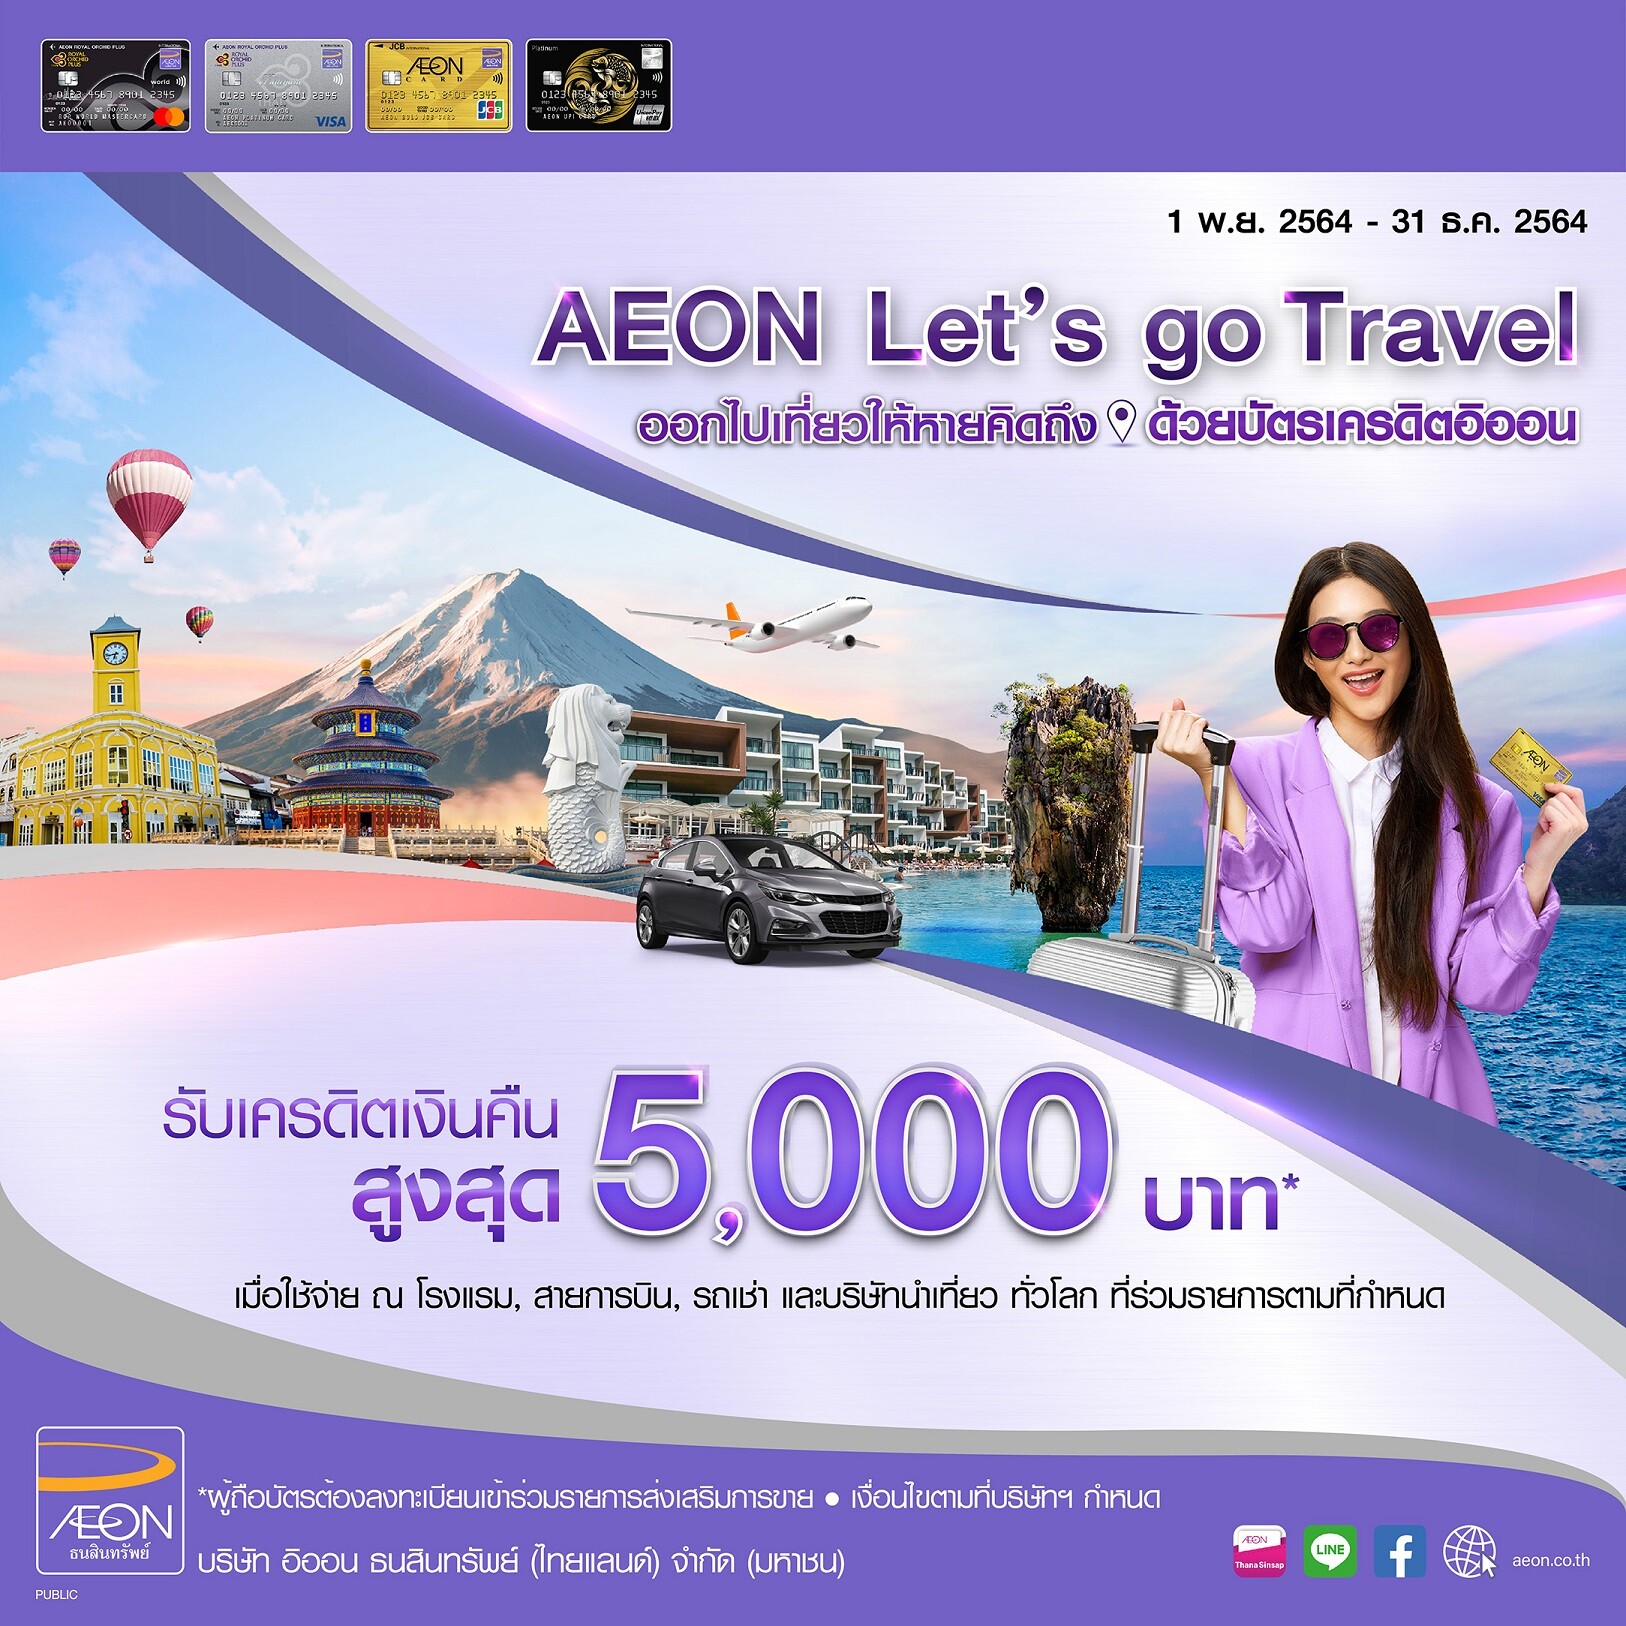 อิออน จัดแคมเปญ AEON Let's go Travel ต้อนรับเปิดประเทศ ด้วยเครดิตเงินคืนสูงสุด 5,000 บาท